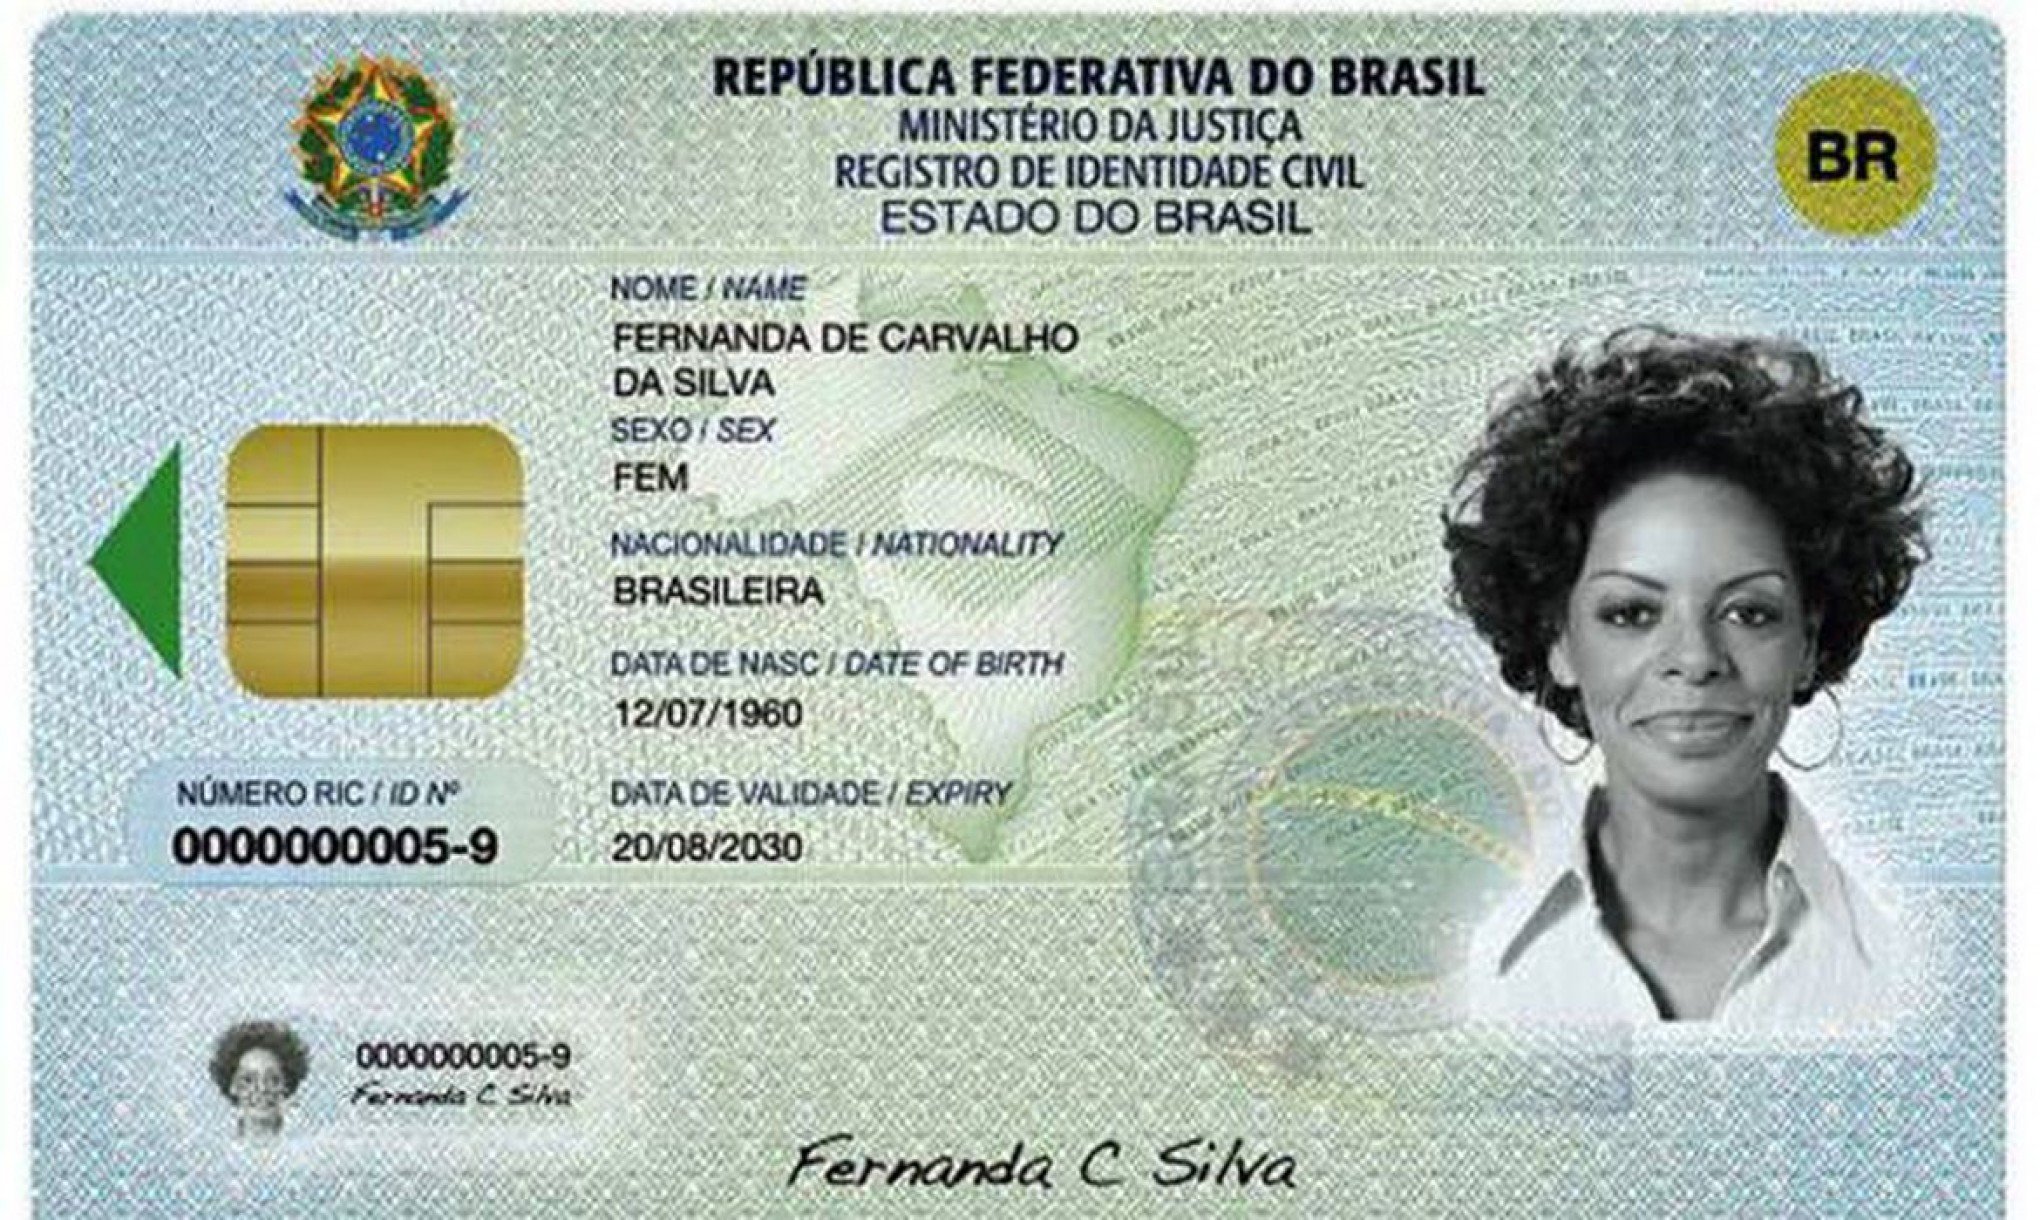 Nova carteira de identidade começa a ser implantada na próxima terça (26)  em Porto Alegre - IGP-RS